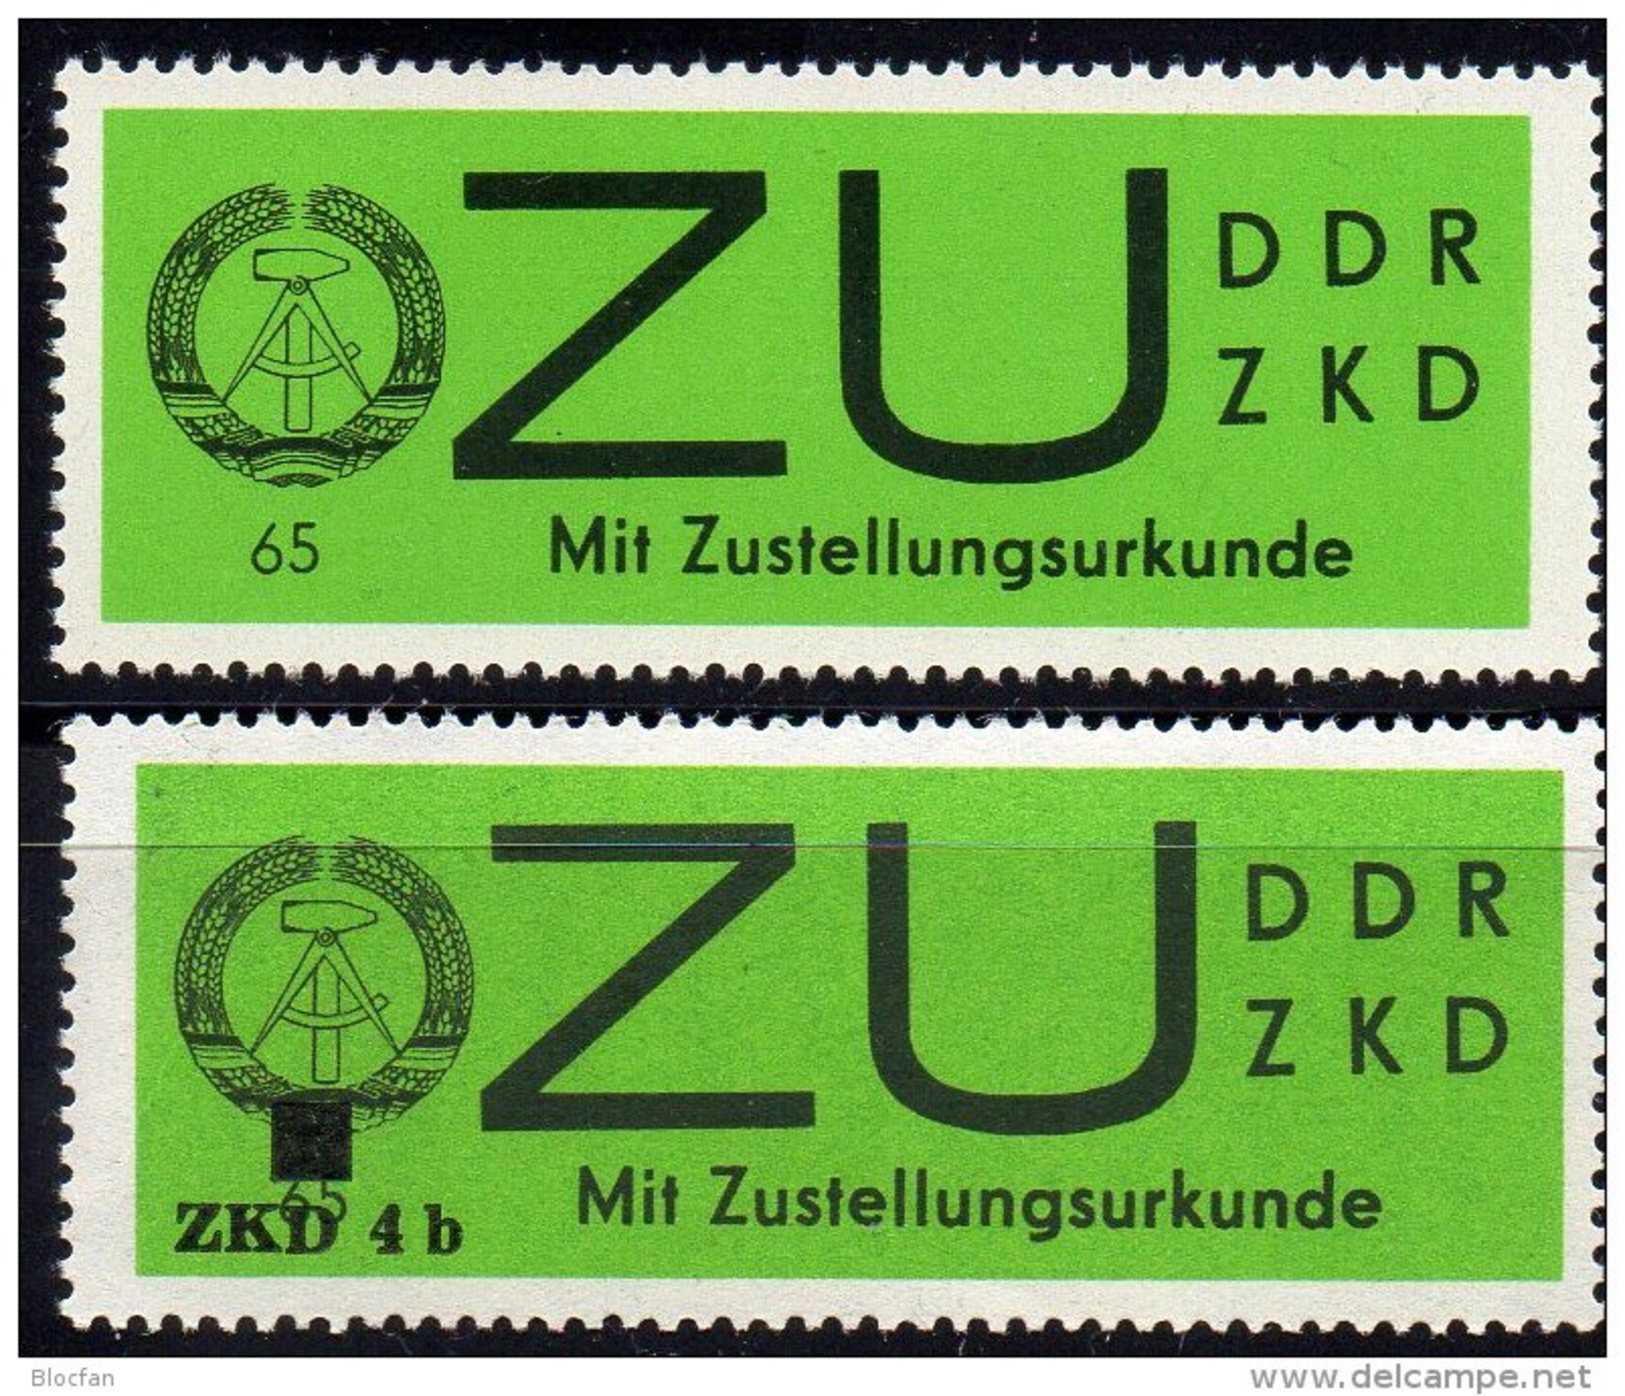 ZKD 1966 DDR VD 3 X,y,3 AD 4a, ZU 2 X,y+2 AD 4b ** 62&euro; Mit Aufdruck Für Neue Dienstbriefe Service Stamps Of Germany - Service